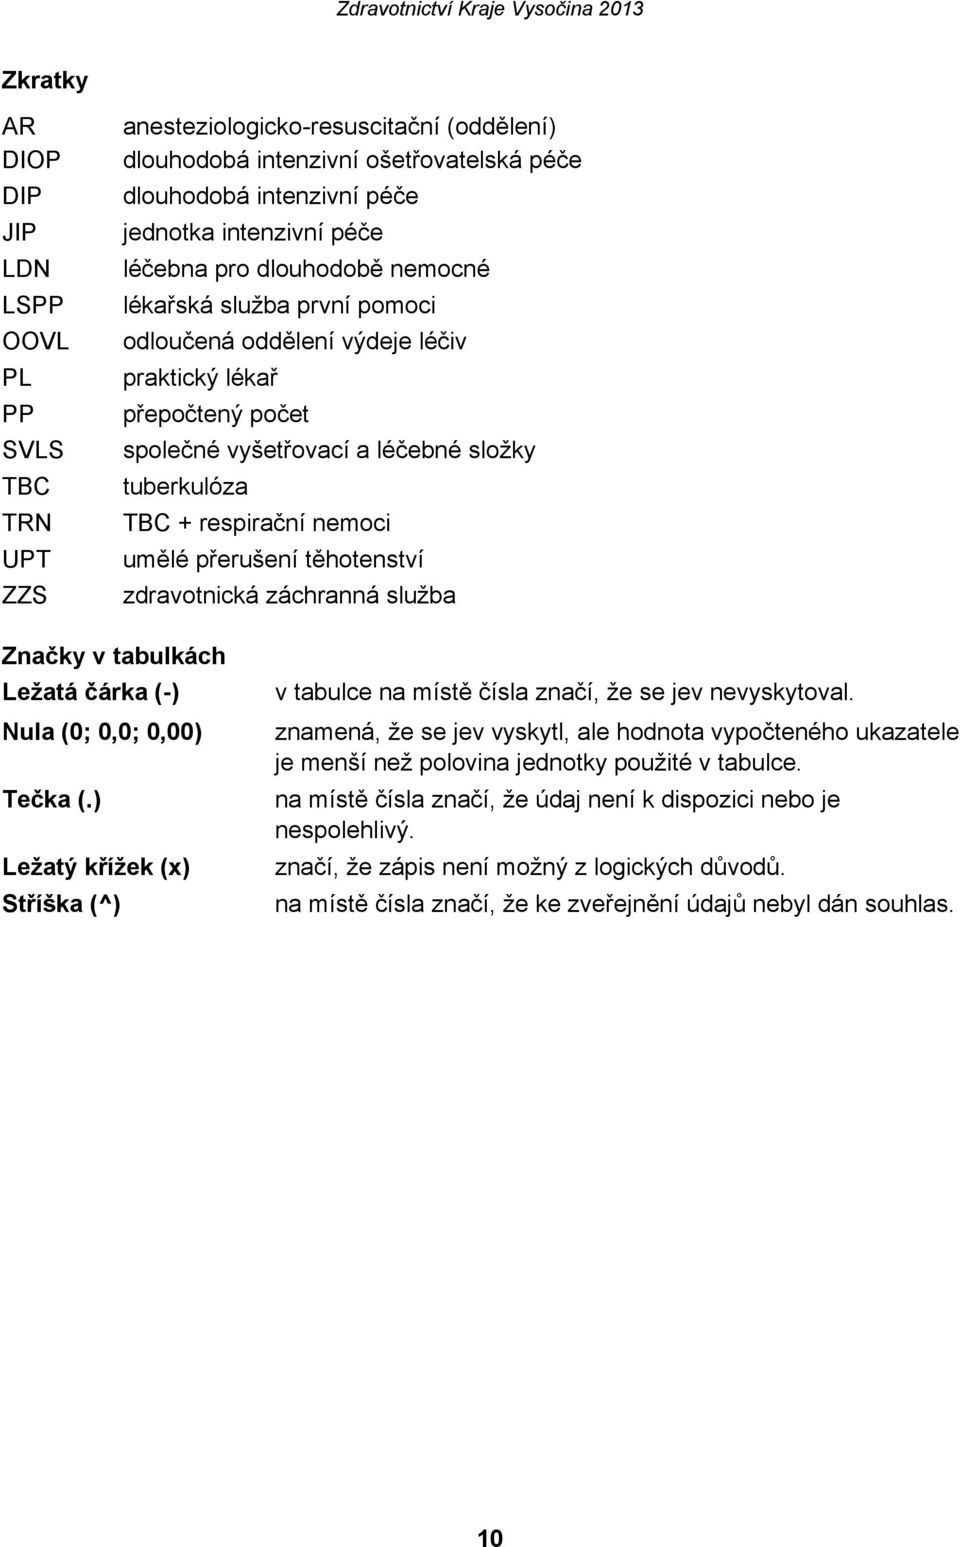 umělé přerušení těhotenství zdravotnická záchranná služba Značky v tabulkách Ležatá čárka (-) Nula (0; 0,0; 0,00) Tečka (.